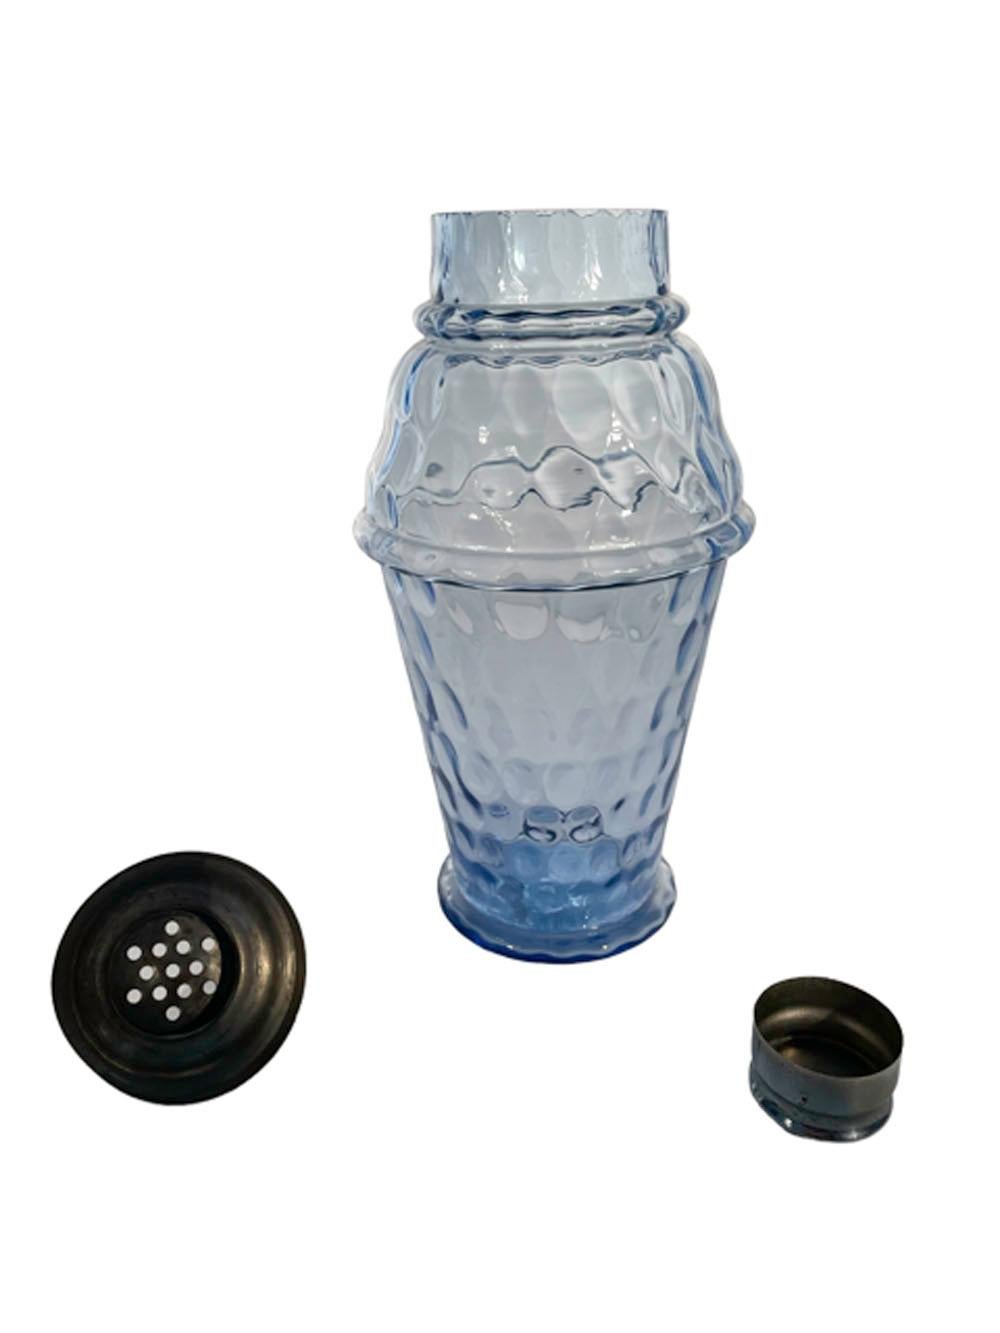 Shaker moulé Art Déco en verre bleu cobalt pâle avec un motif d'empreintes de pouce ou de pièces de monnaie sur toute la surface, avec un couvercle et un capuchon chromés versés au centre.